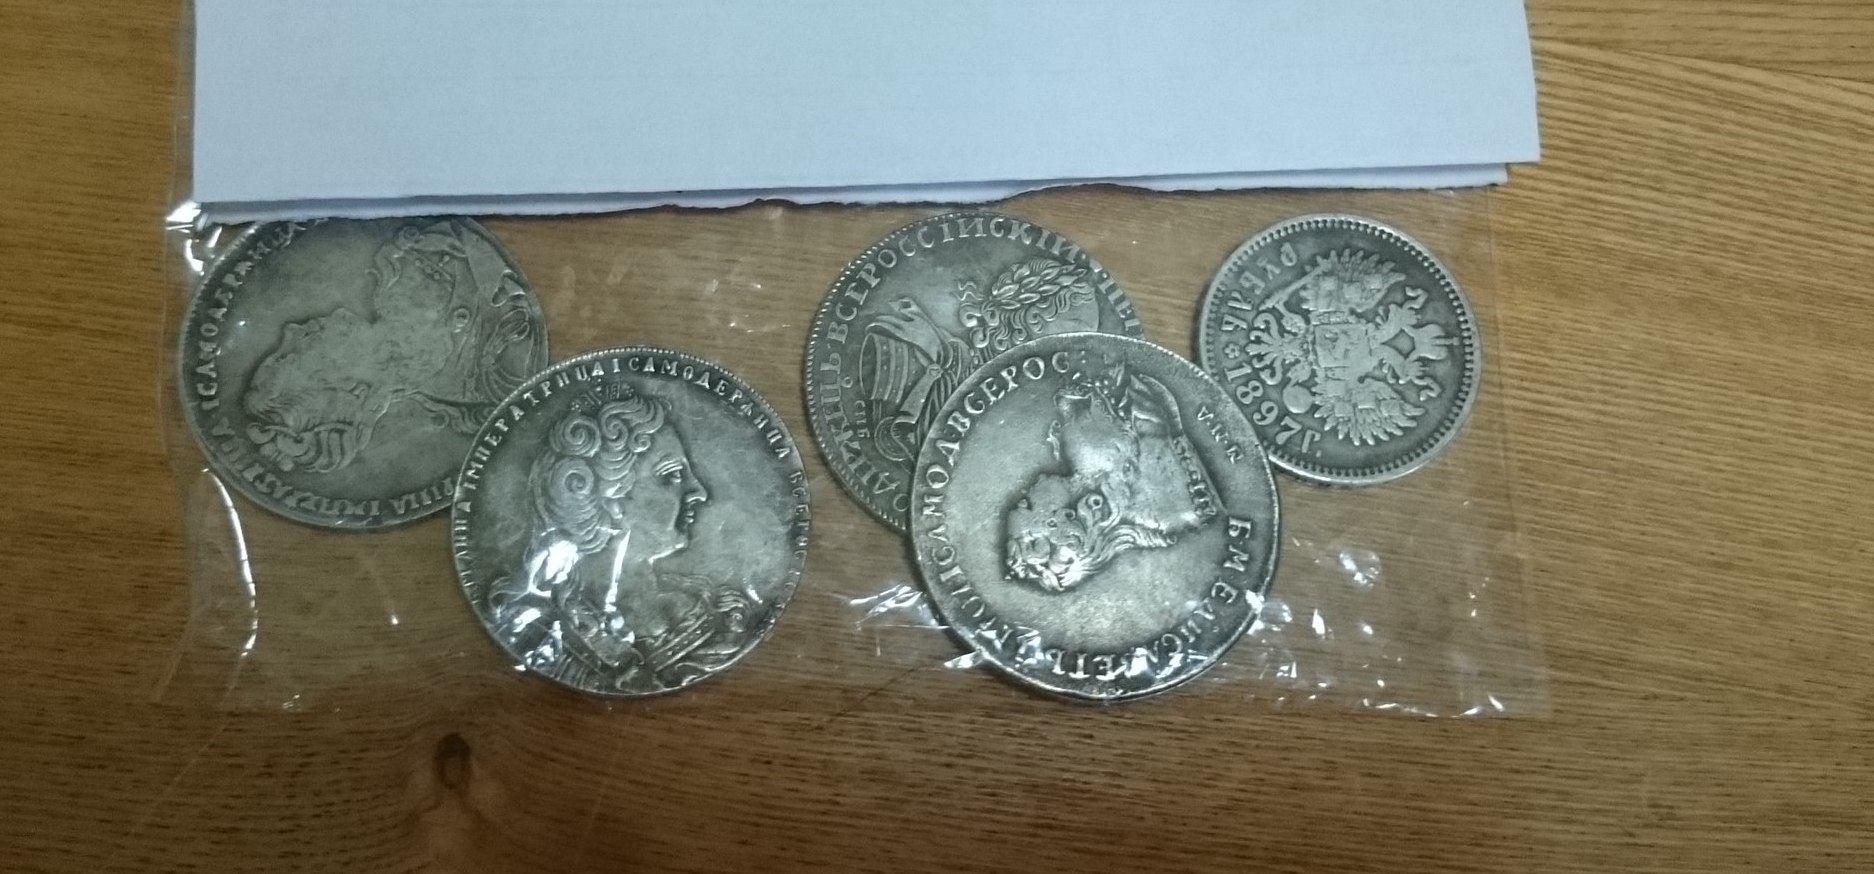 В Коми уличные торговцы предлагают жителям фальшивые монеты